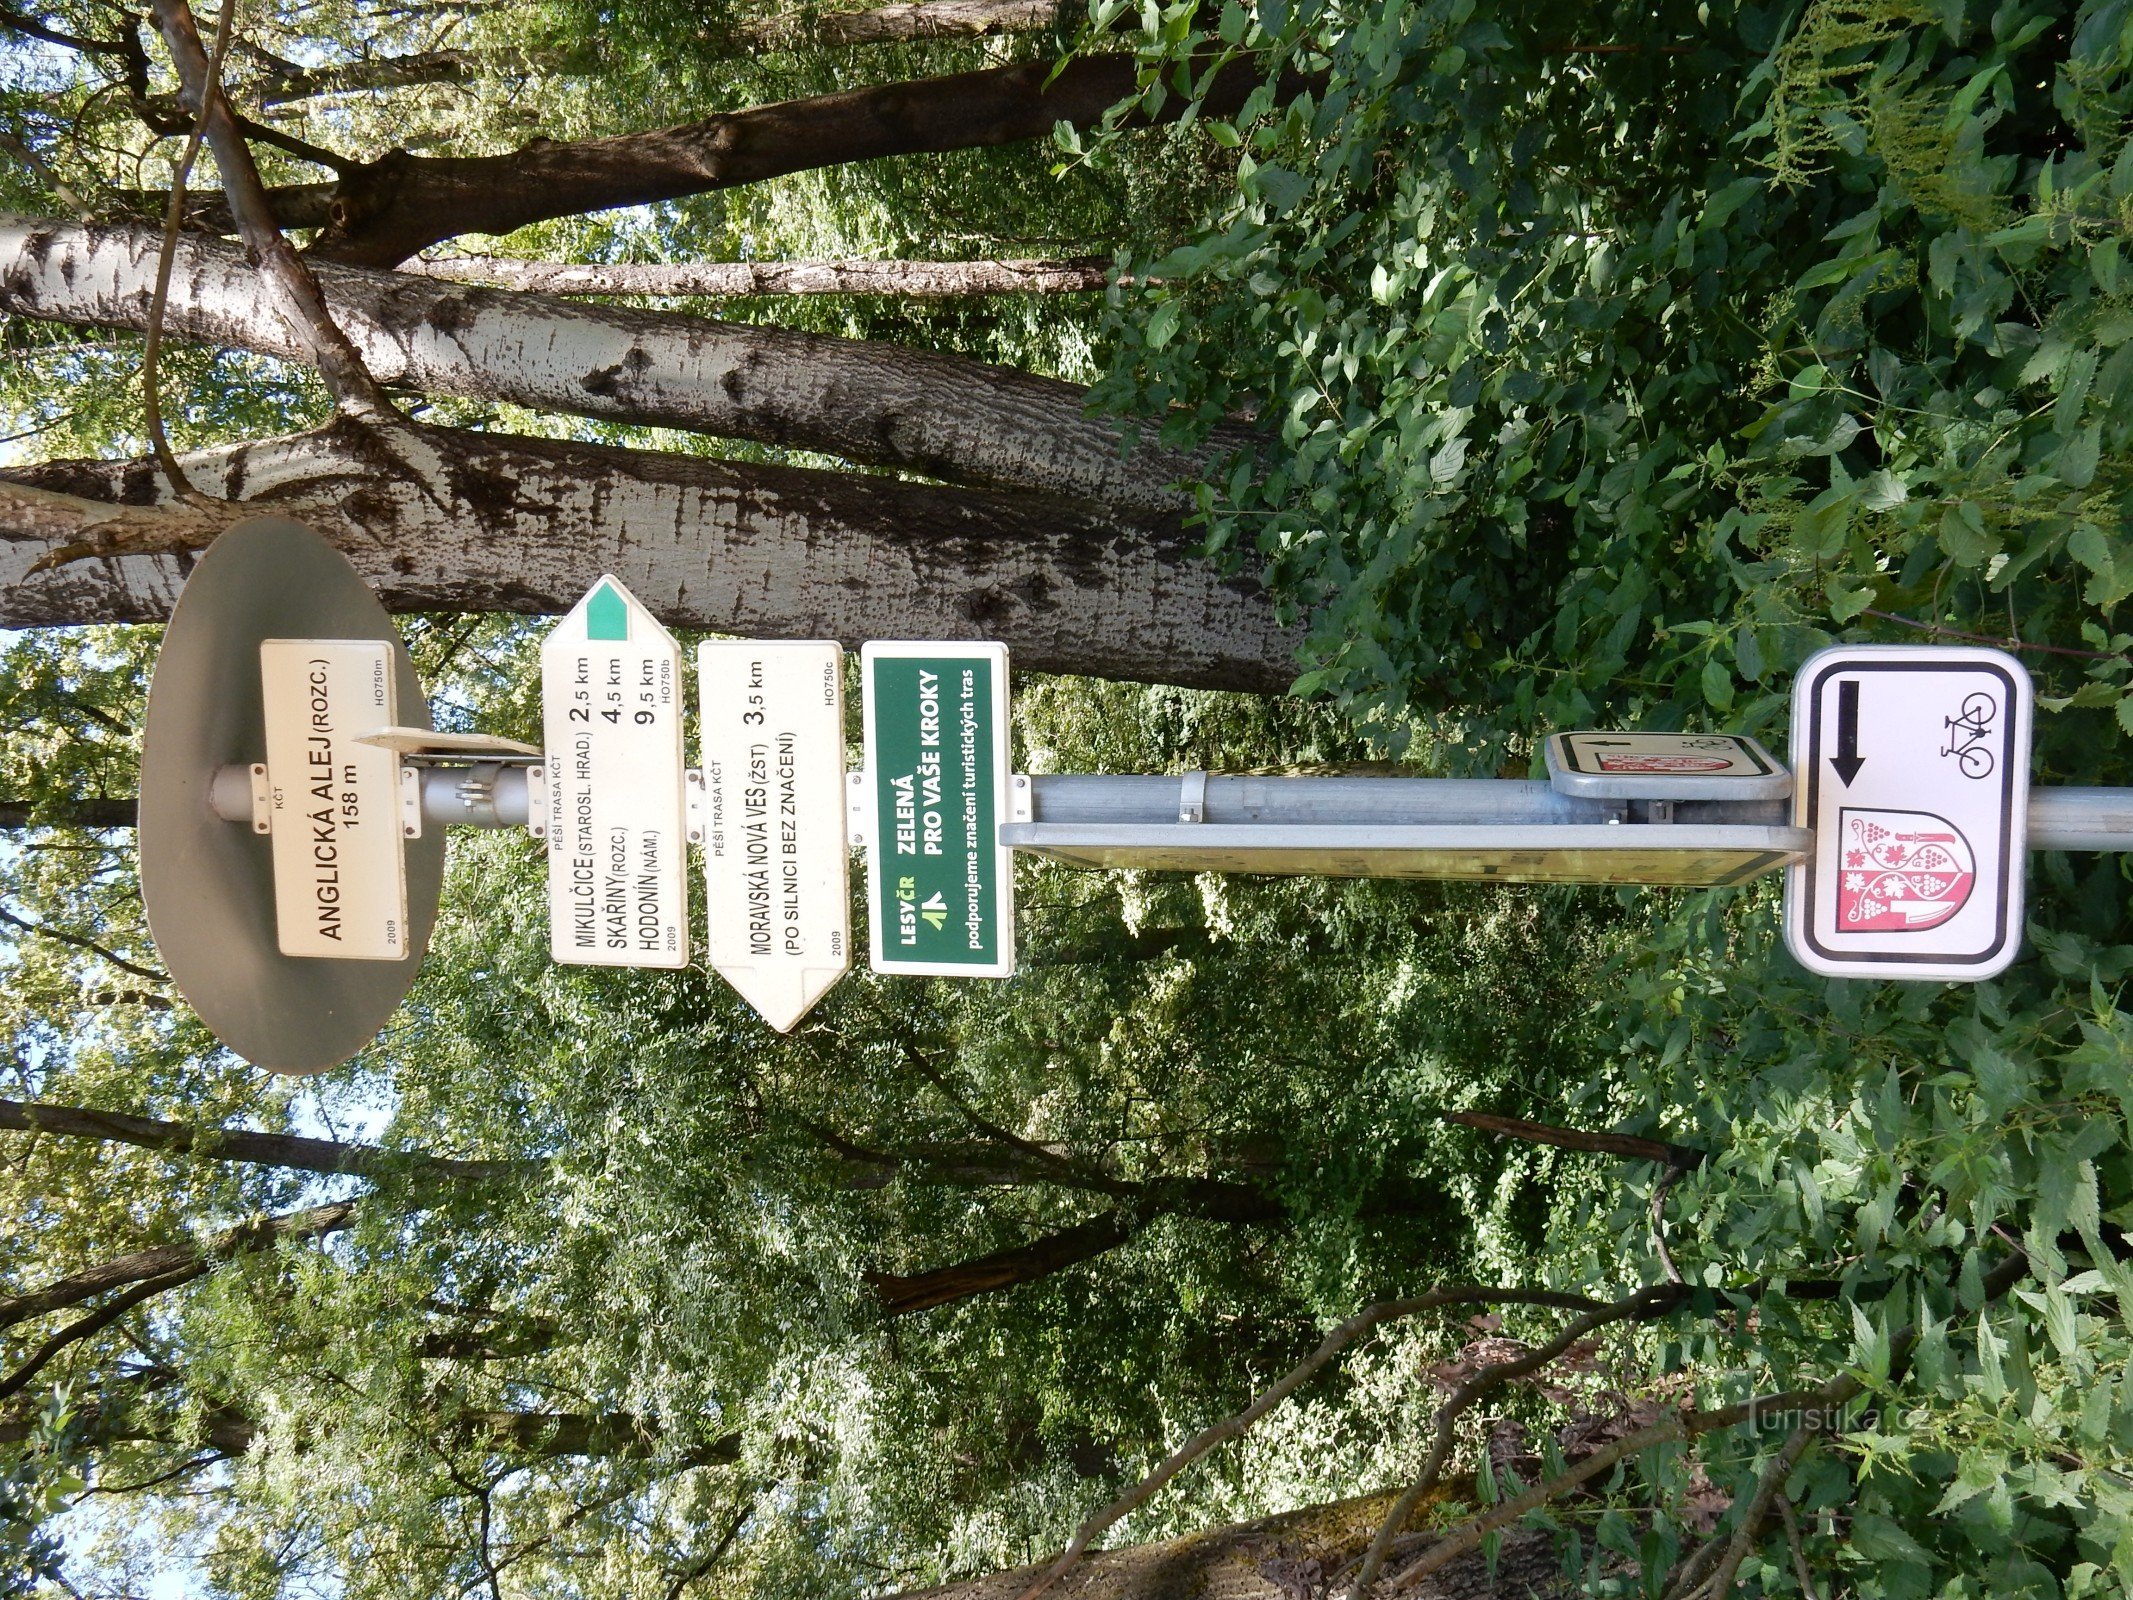 Placa de sinalização em Anglická aleja a caminho de Mikulčice